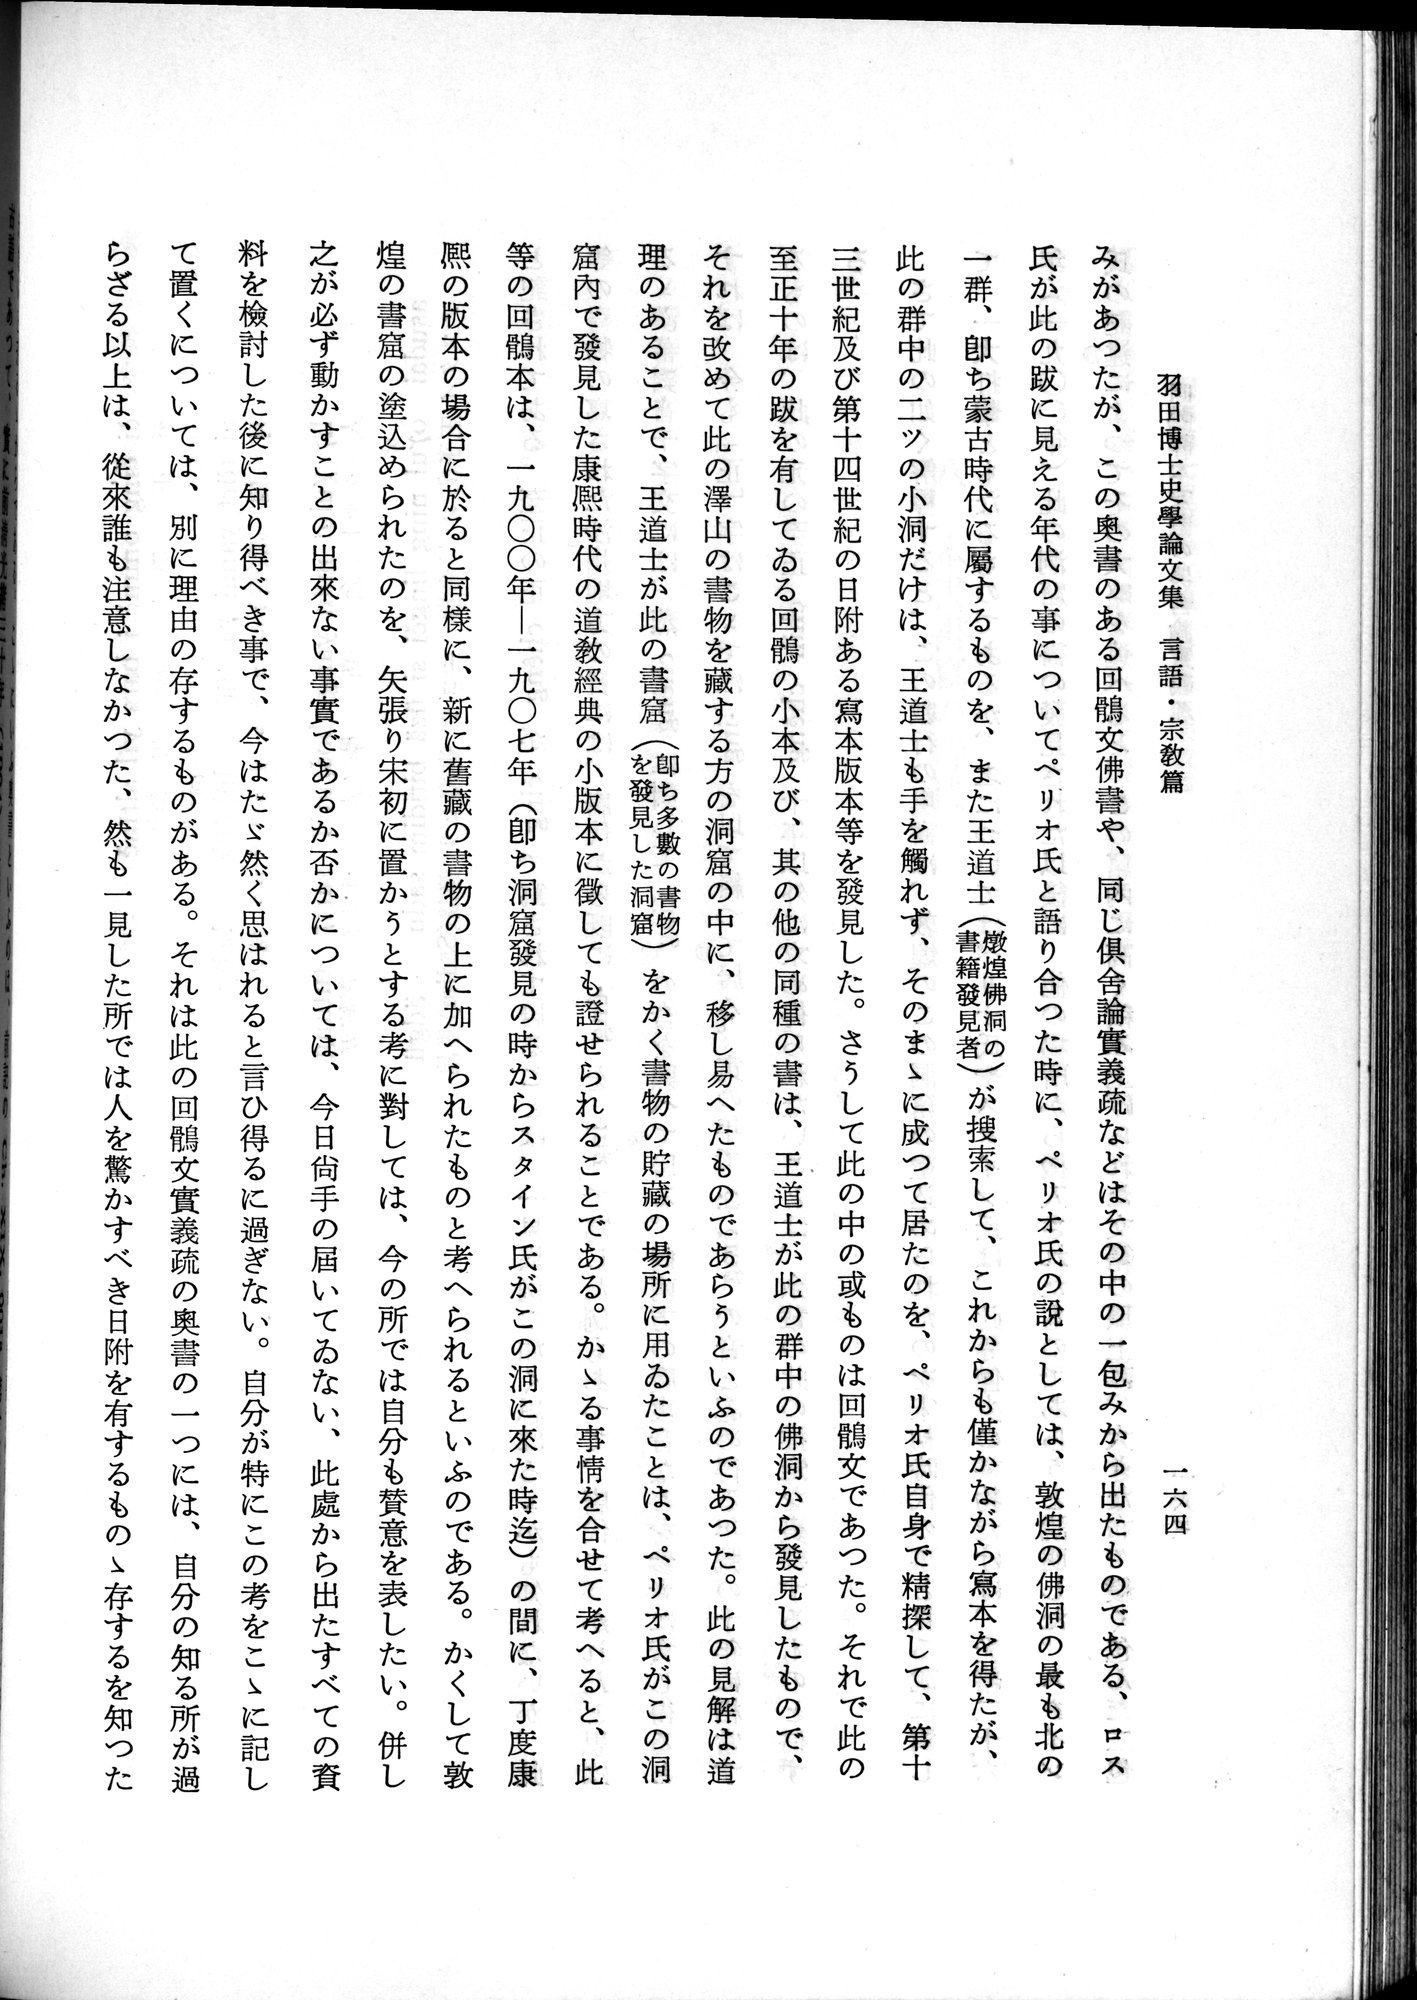 羽田博士史学論文集 : vol.2 / 226 ページ（白黒高解像度画像）